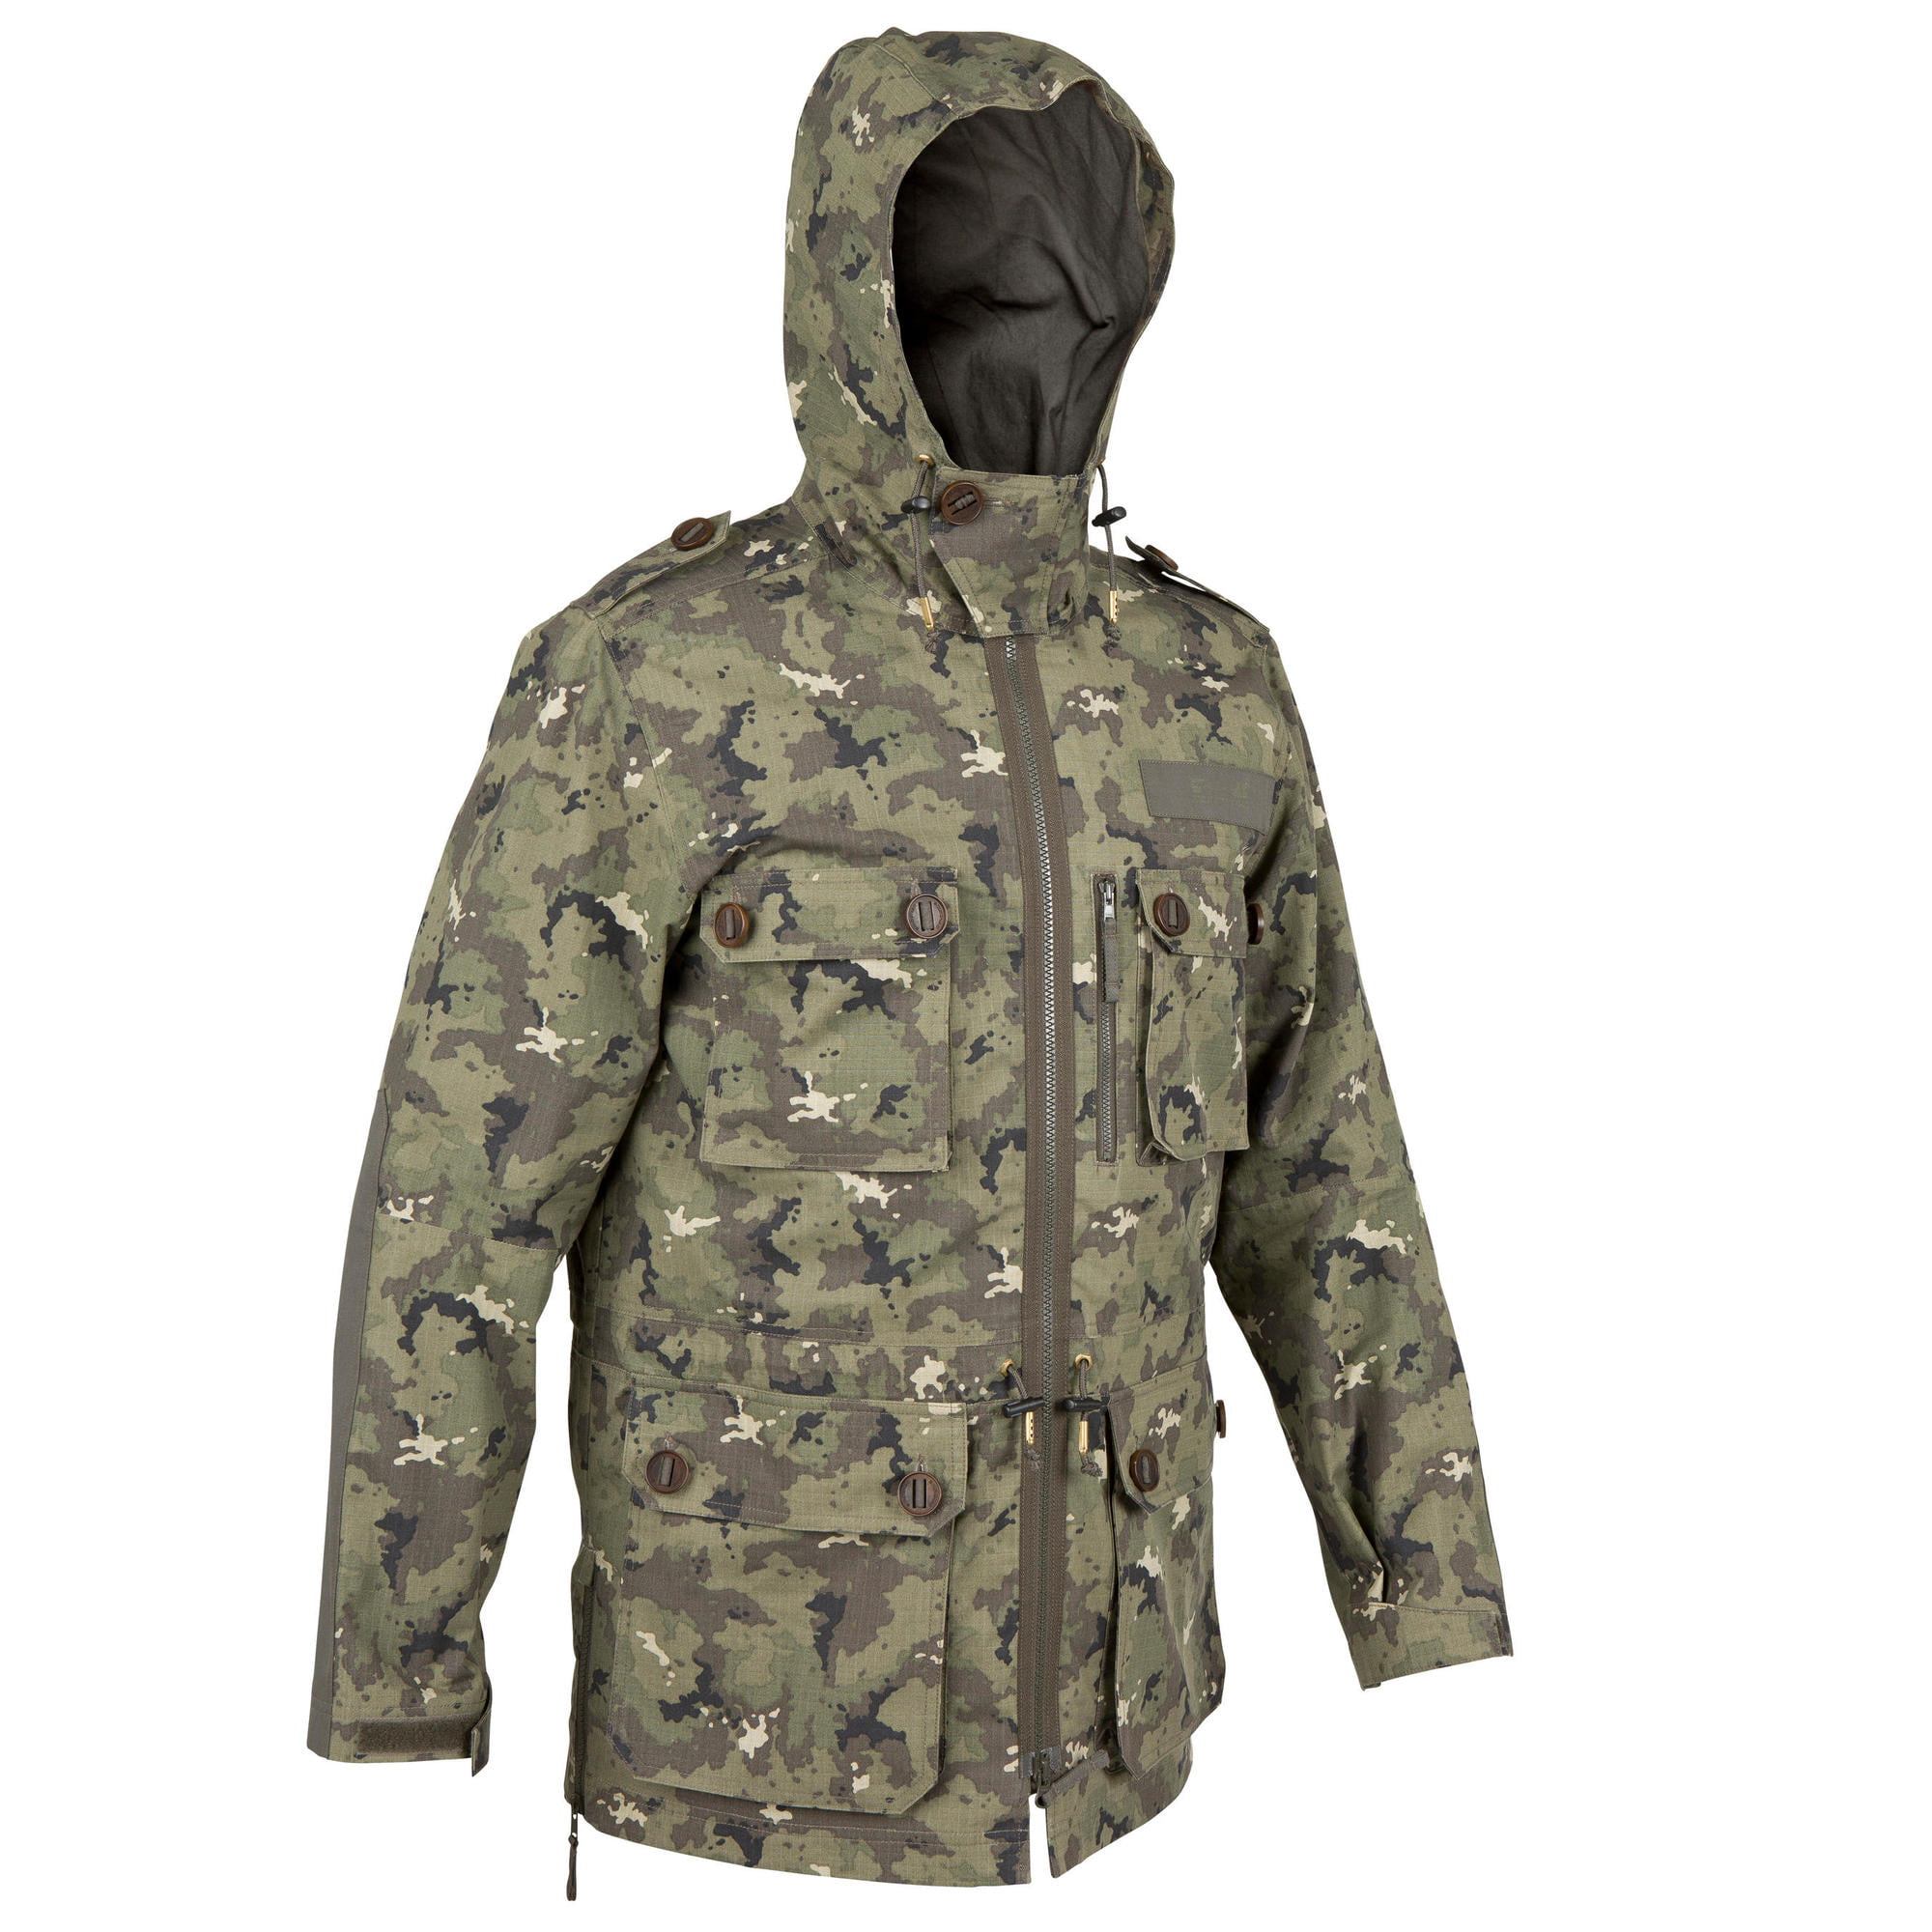 decathlon camouflage jacket